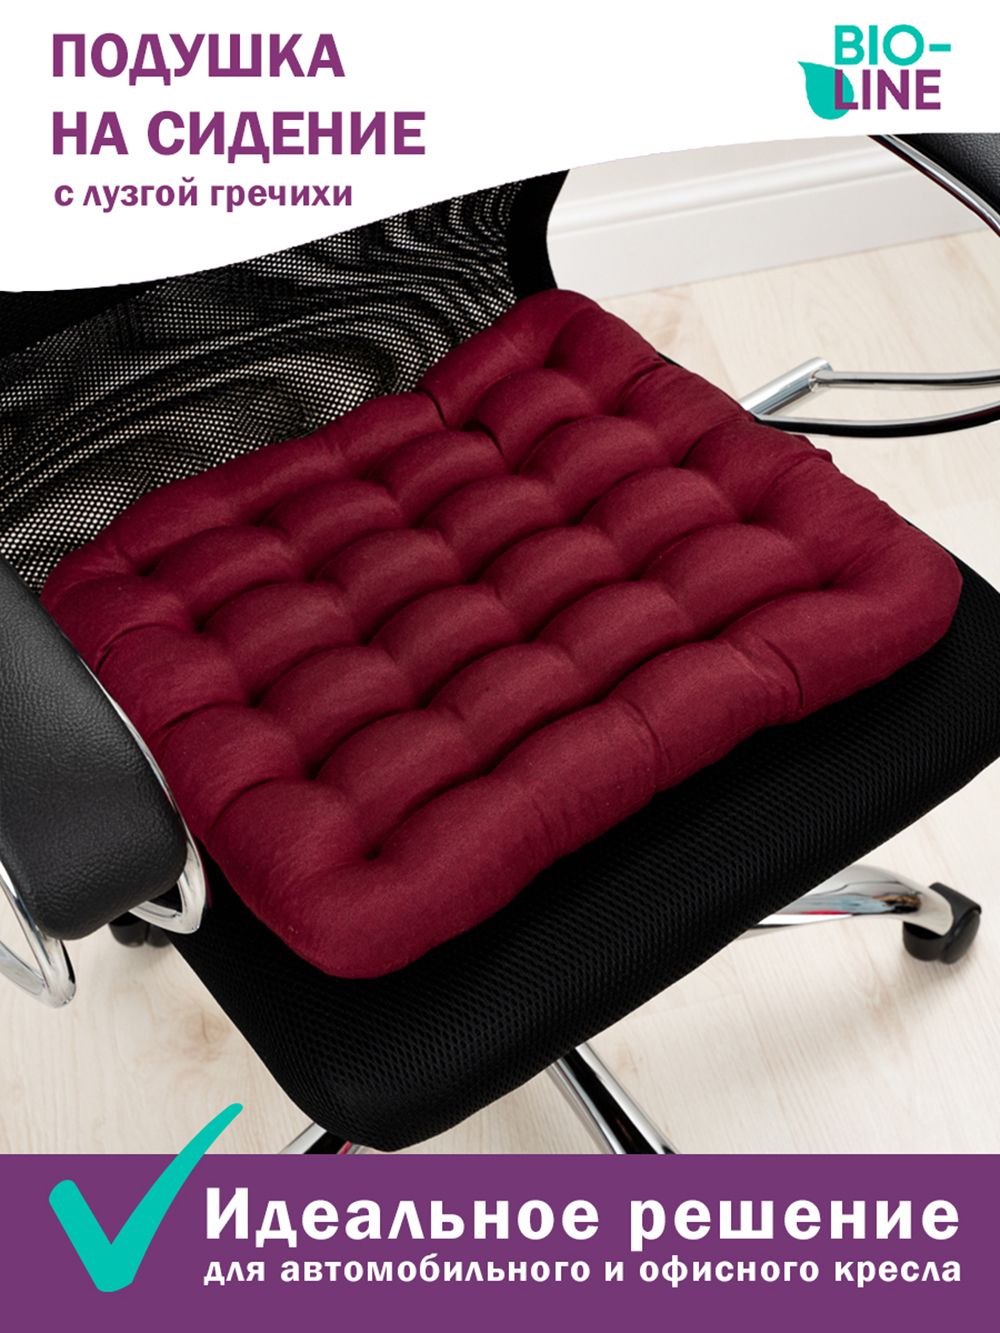 Подушка на стул Bio-Line с гречневой лузгой PSG25 - бордовый